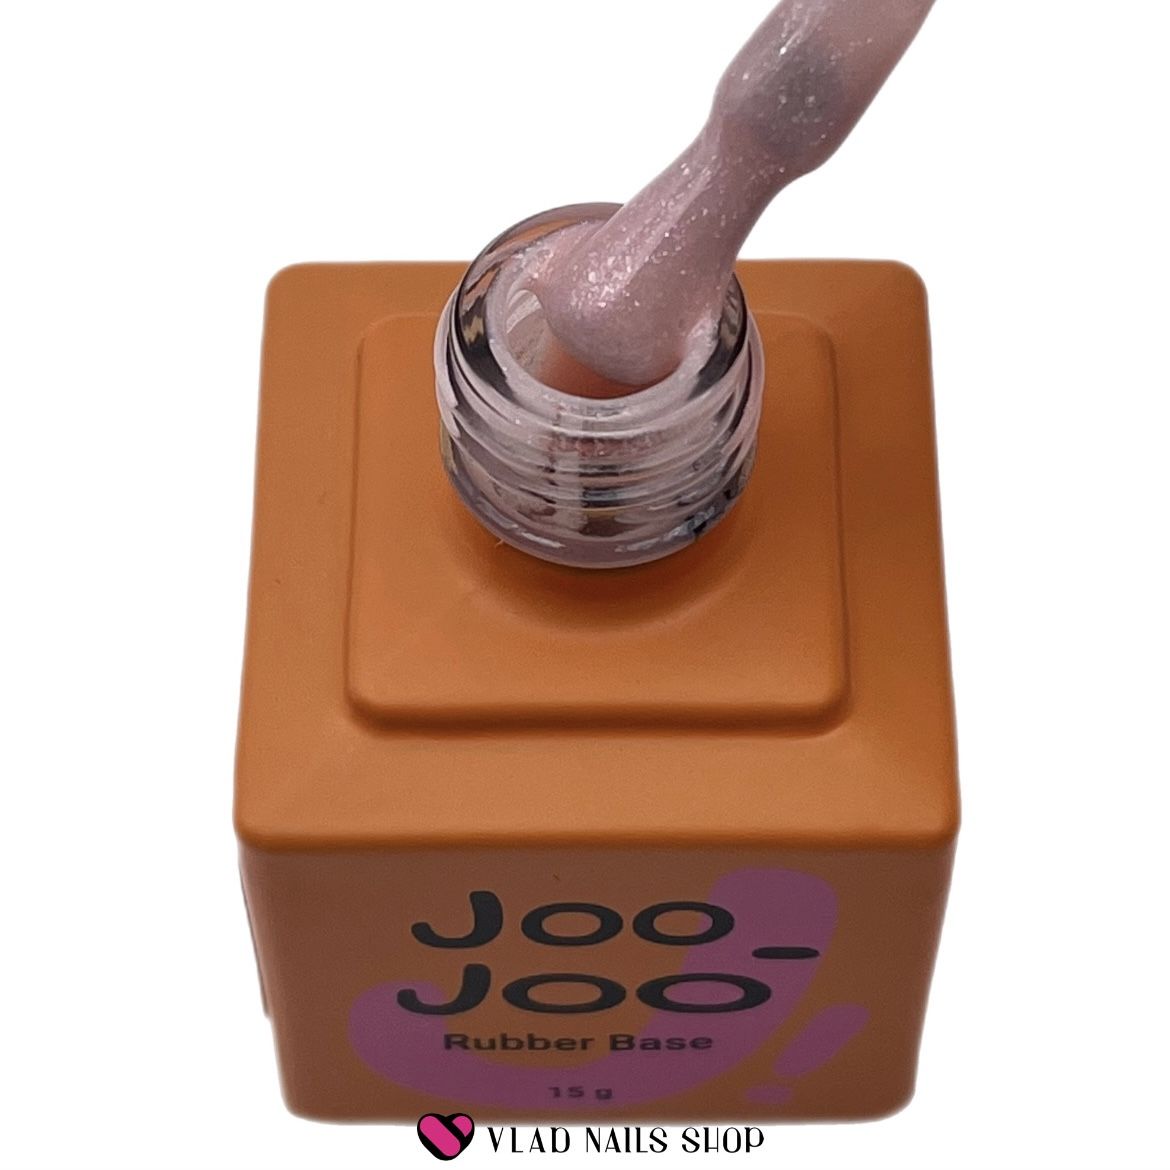 База JOO-JOO камуфлирующая Rubber Base Shine №02 15г